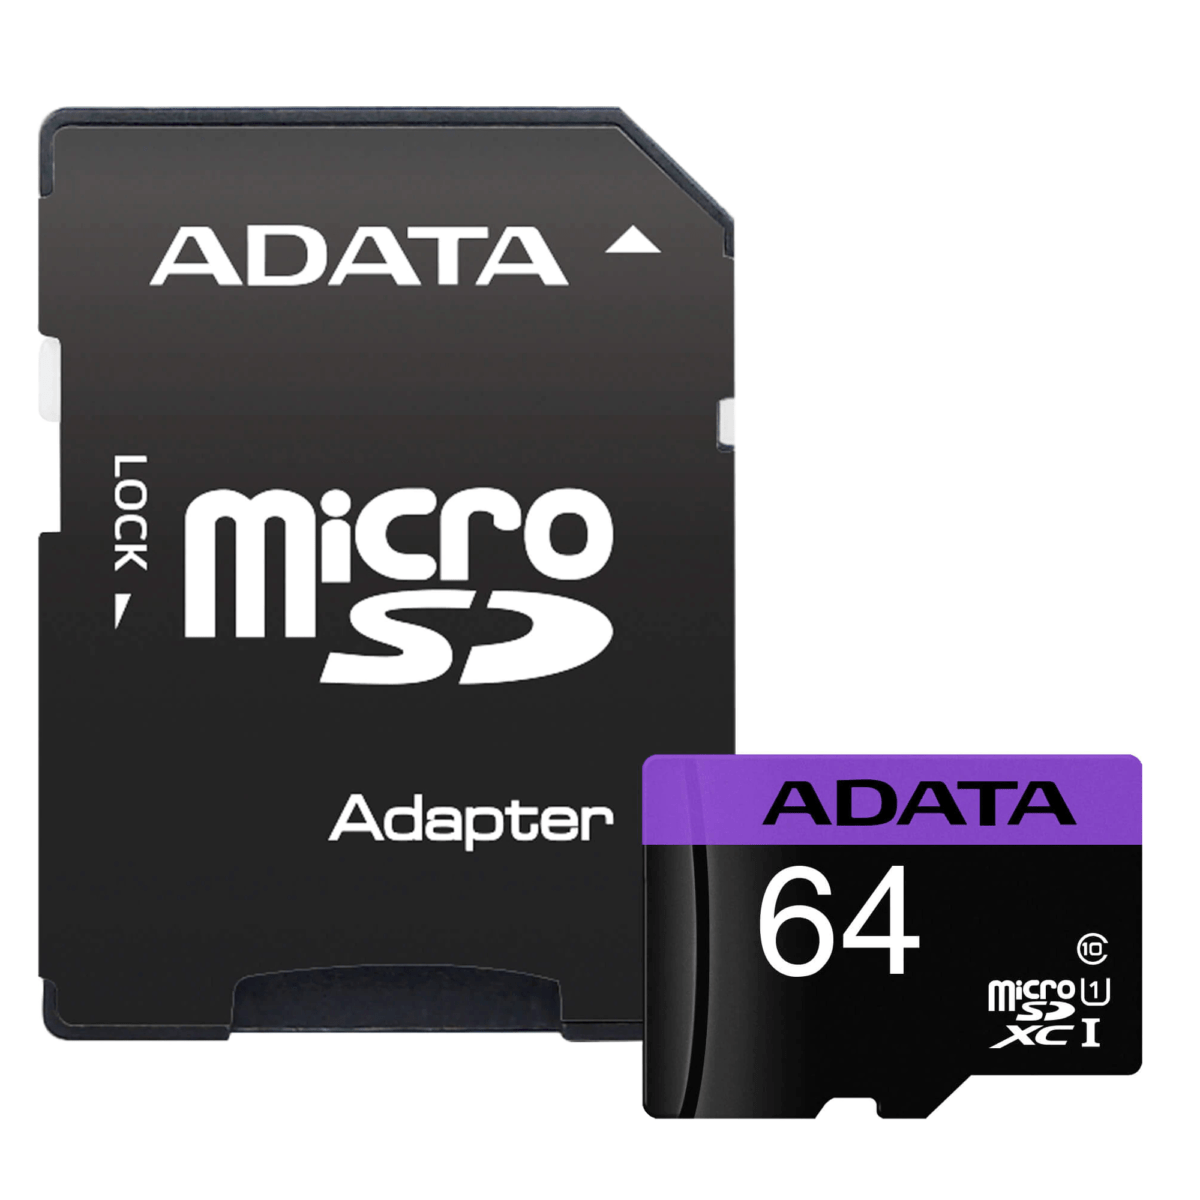 ADATA Premier MicroSDHC 64GB